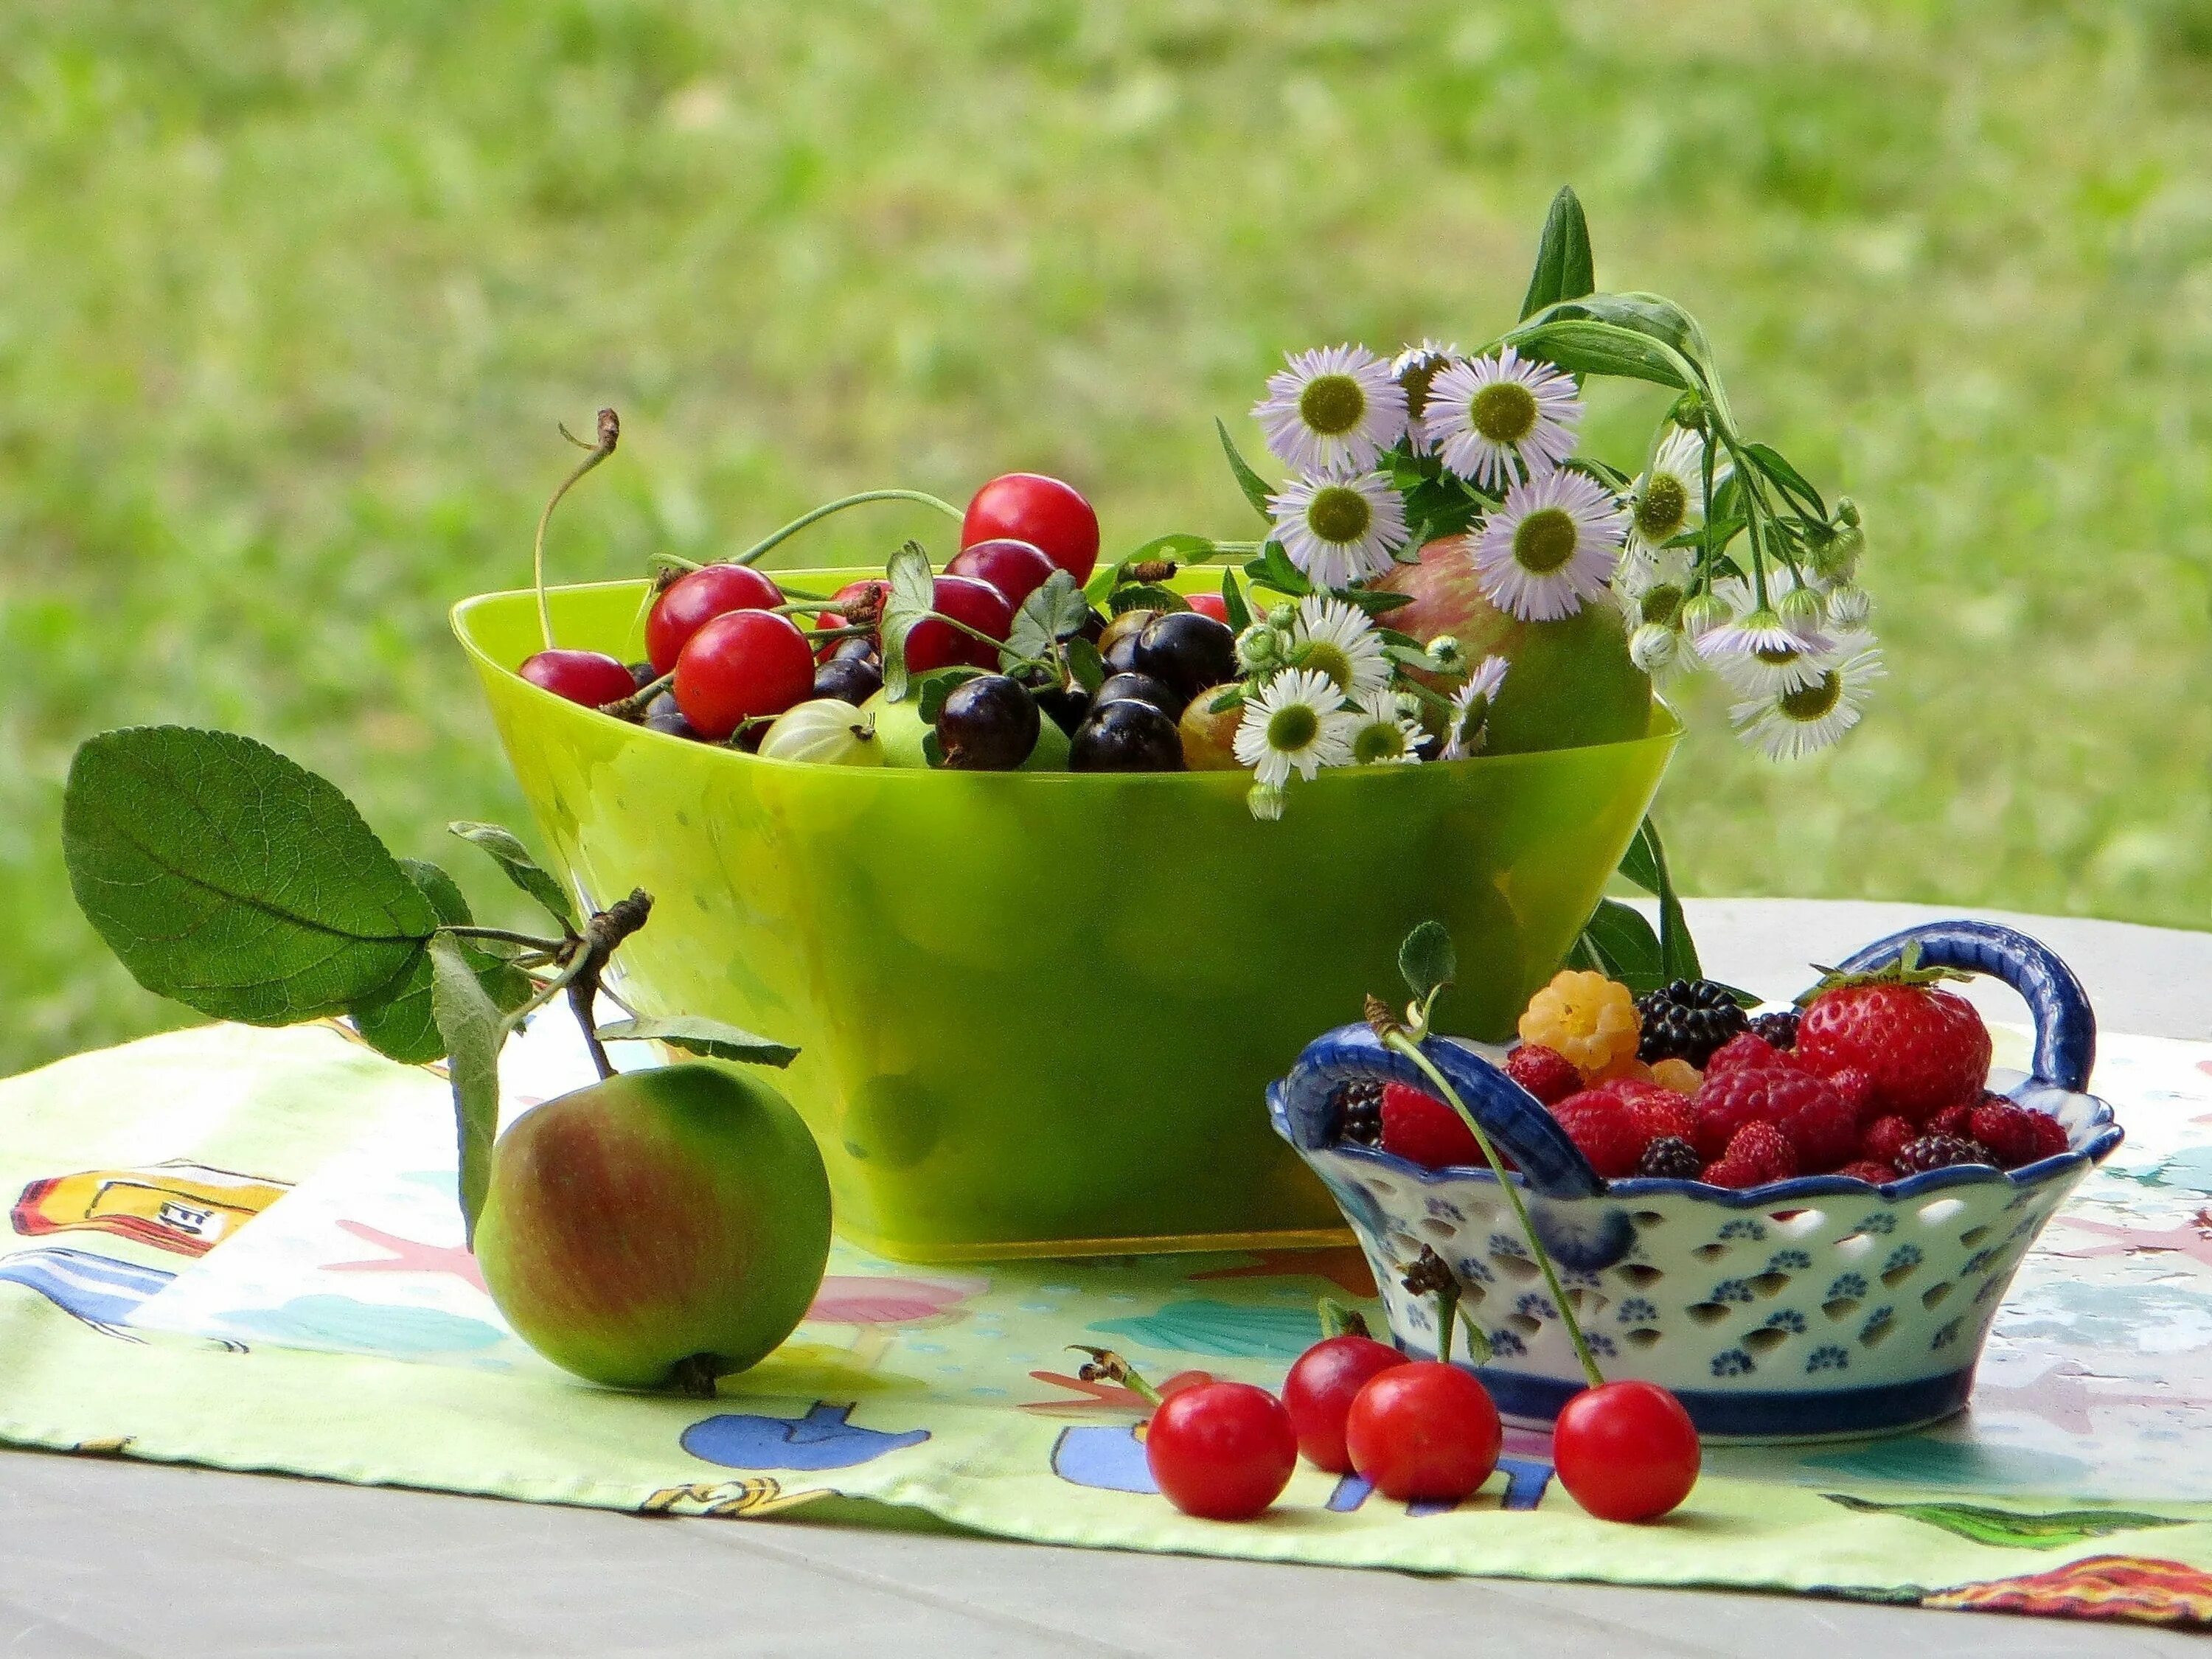 Лето время фруктов. Летние фрукты. Натюрморт с ягодами. Летний натюрморт. Лето фрукты ягоды.